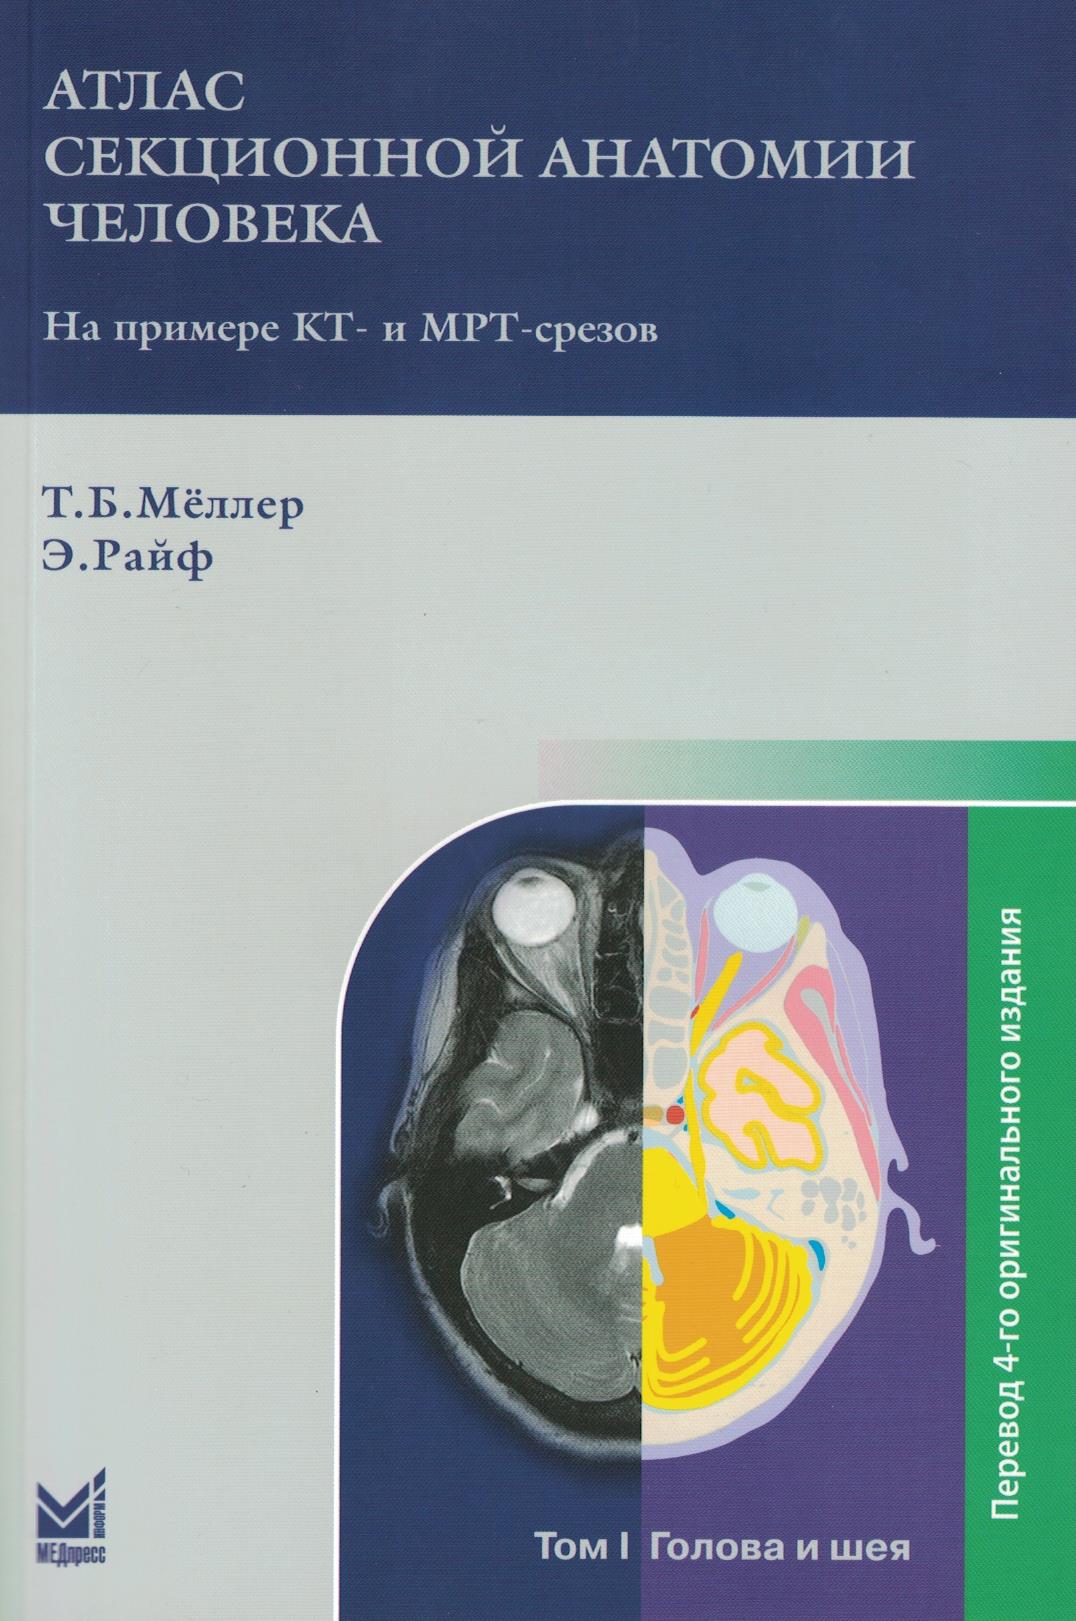 Атлас секционной анатомии человека на примере КТ- и МРТ-срезов.Том 1-й.Голова и шея